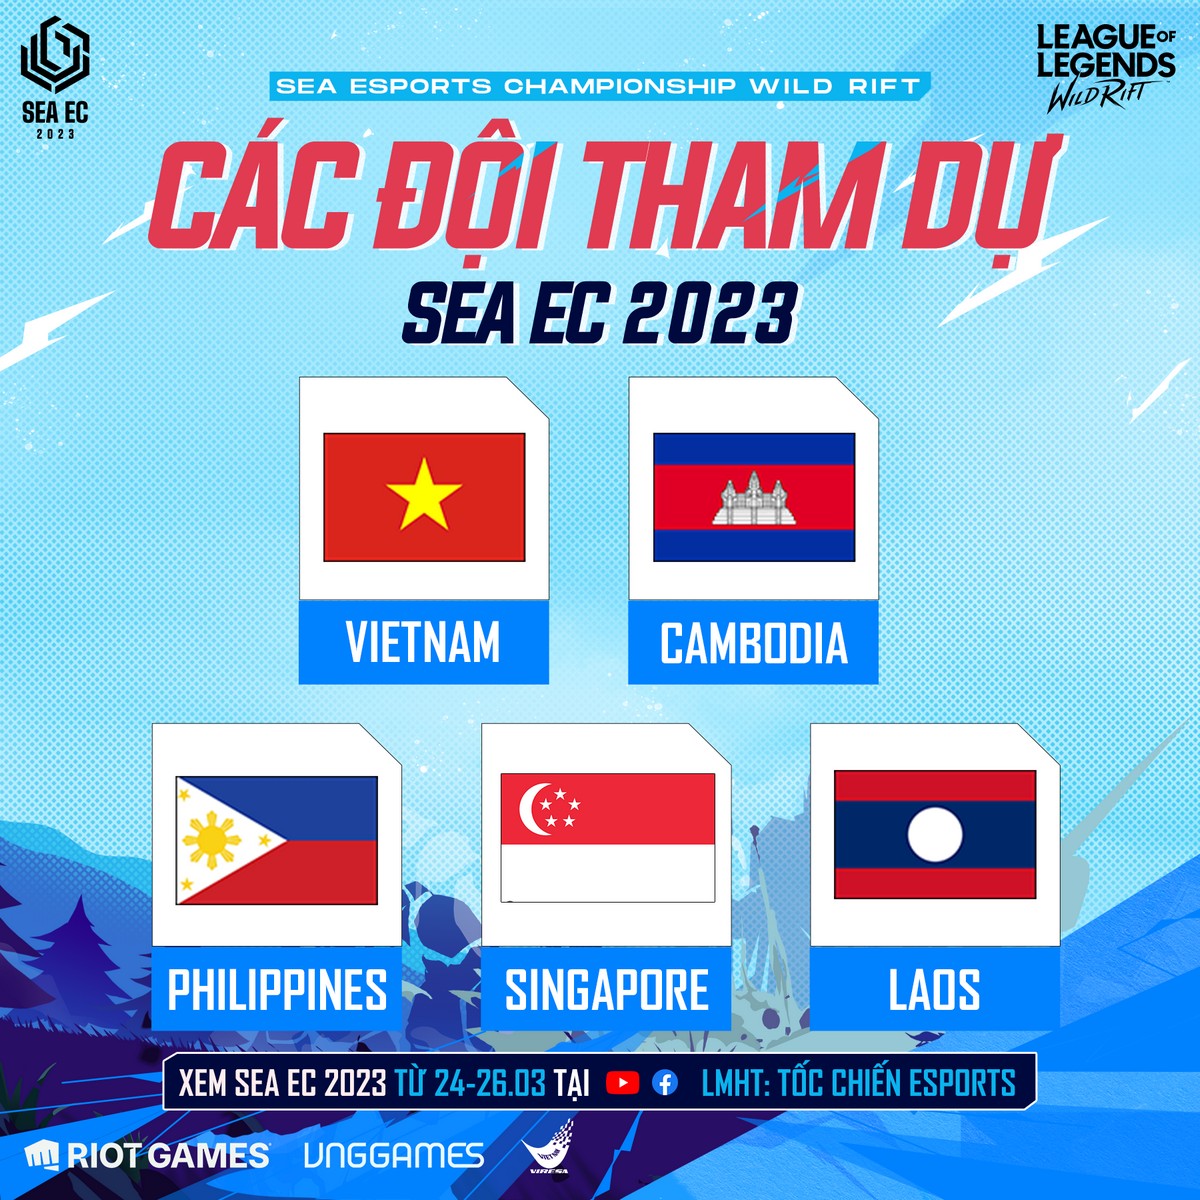 SEA EC 2023 quy tụ 5 đội tuyển Tốc Chiến trong khu vực